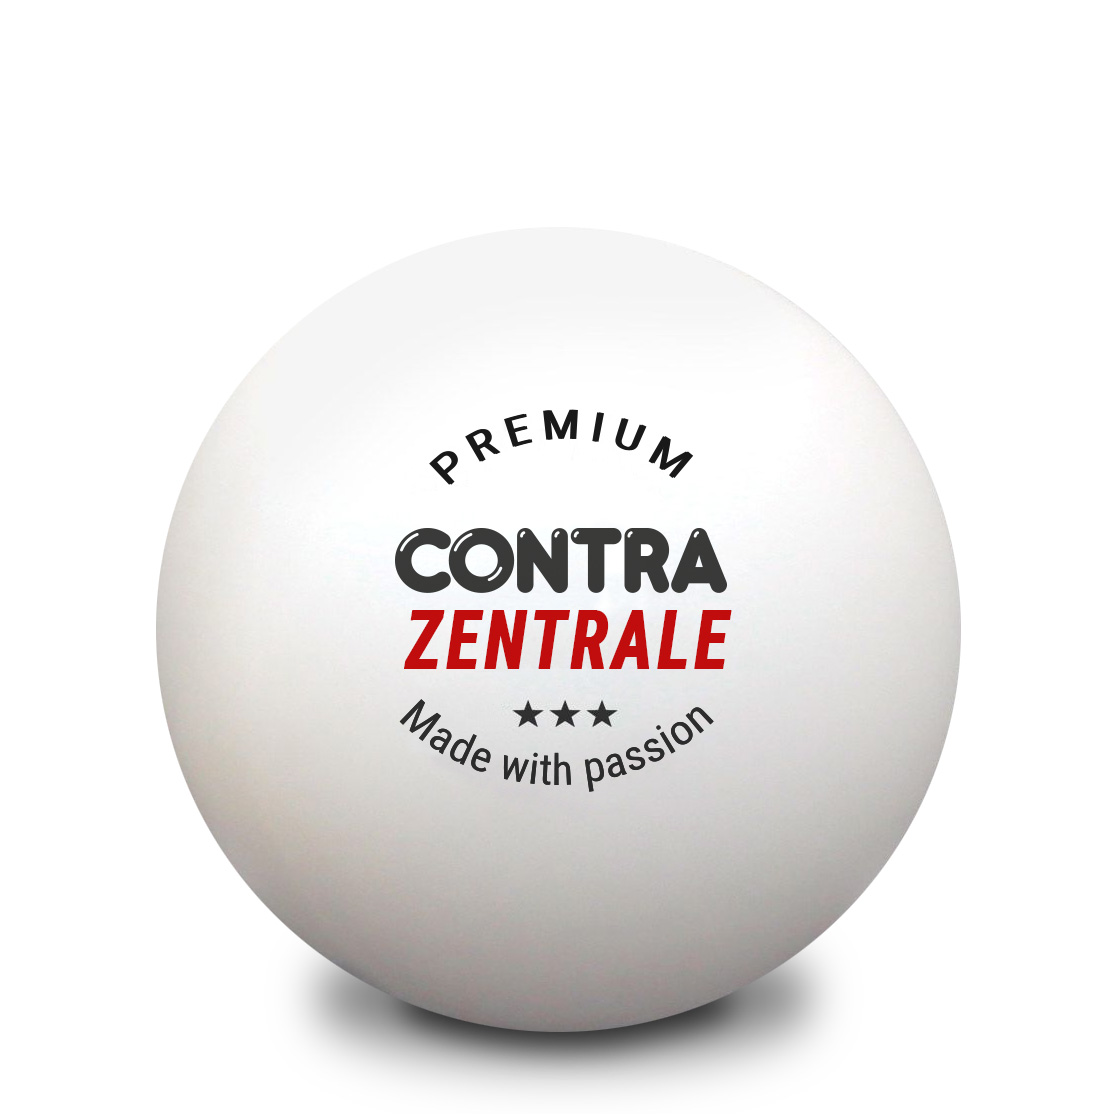 Tischtennisball mit der Aufschrifft Premium, Contra Zentrale, drei Sterne, made with Passion